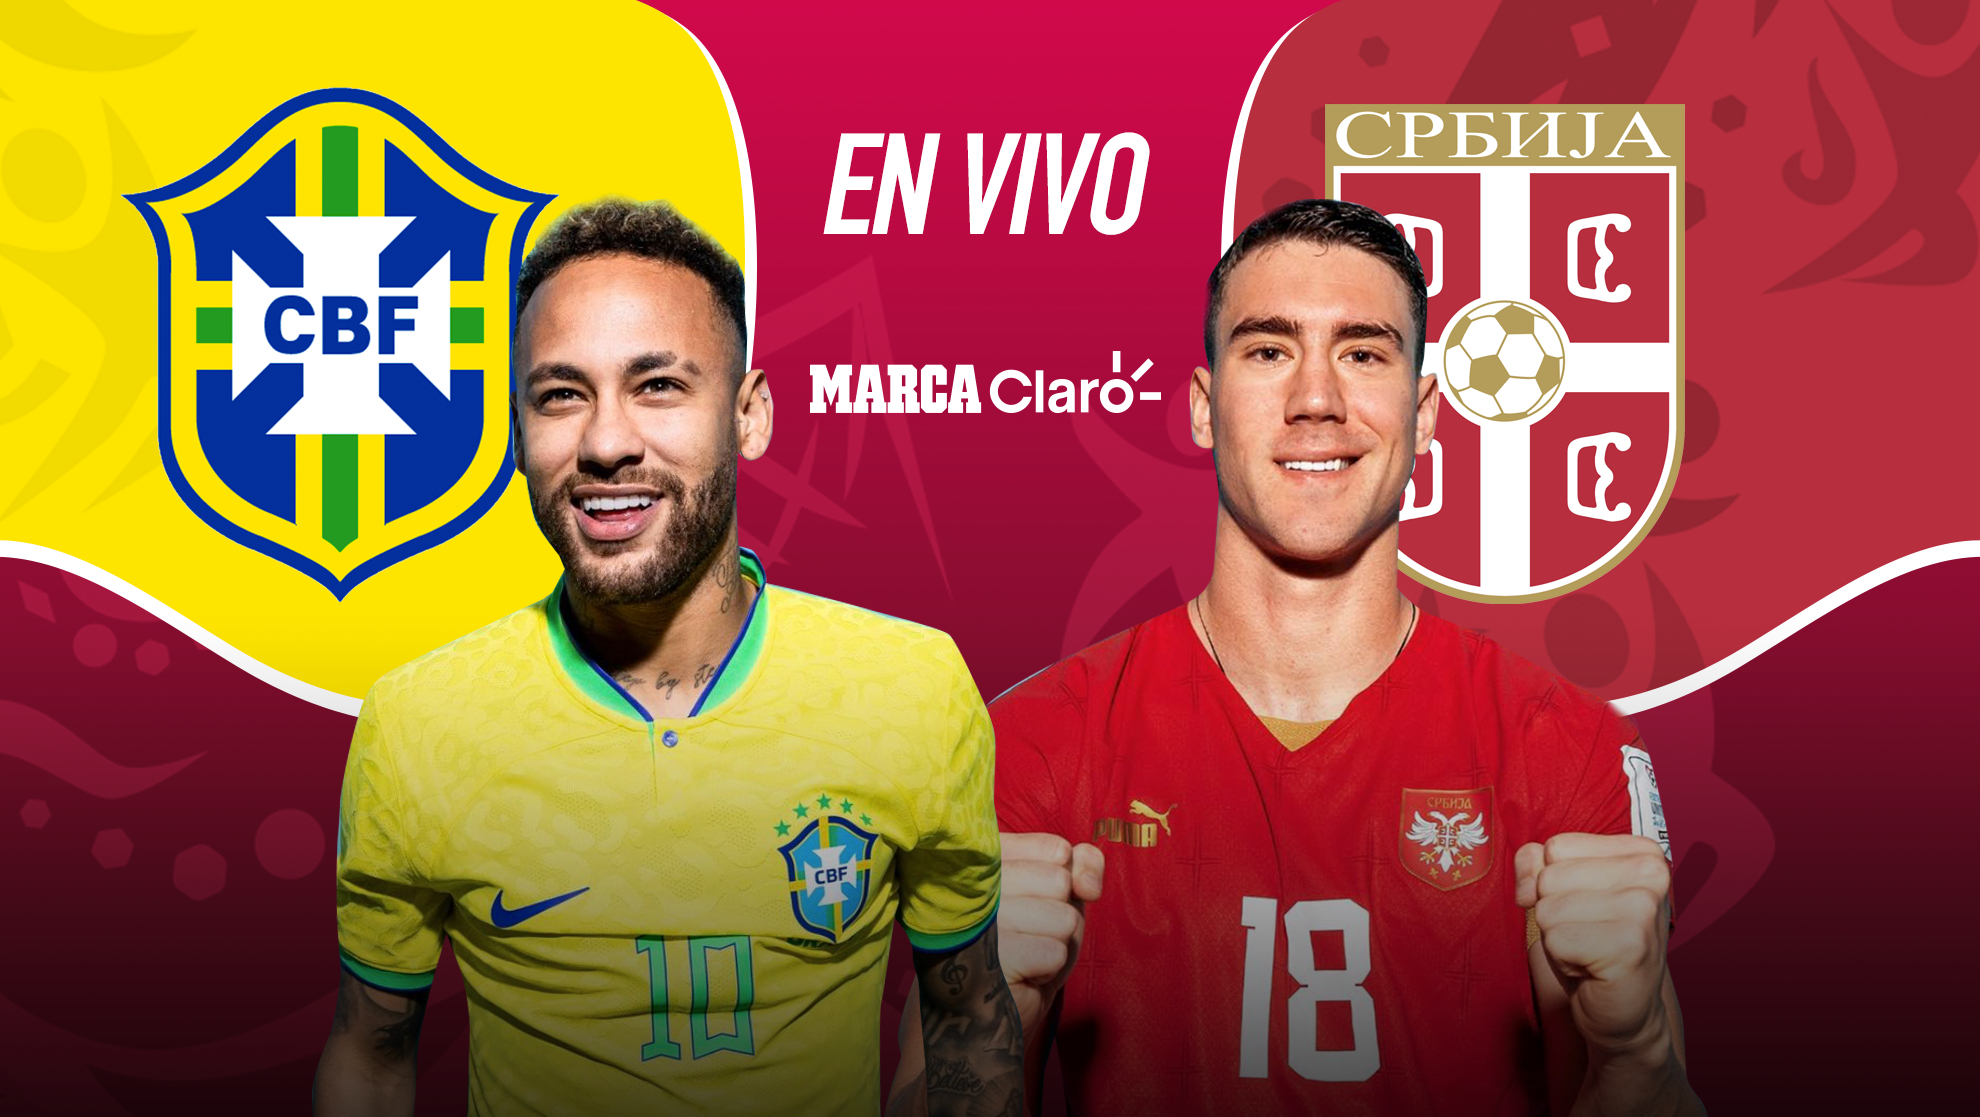 Partidos hoy: Brasil Serbia, resumen y goles del partido del Mundial Qatar 2022: G, fecha 1 MARCA Claro Colombia